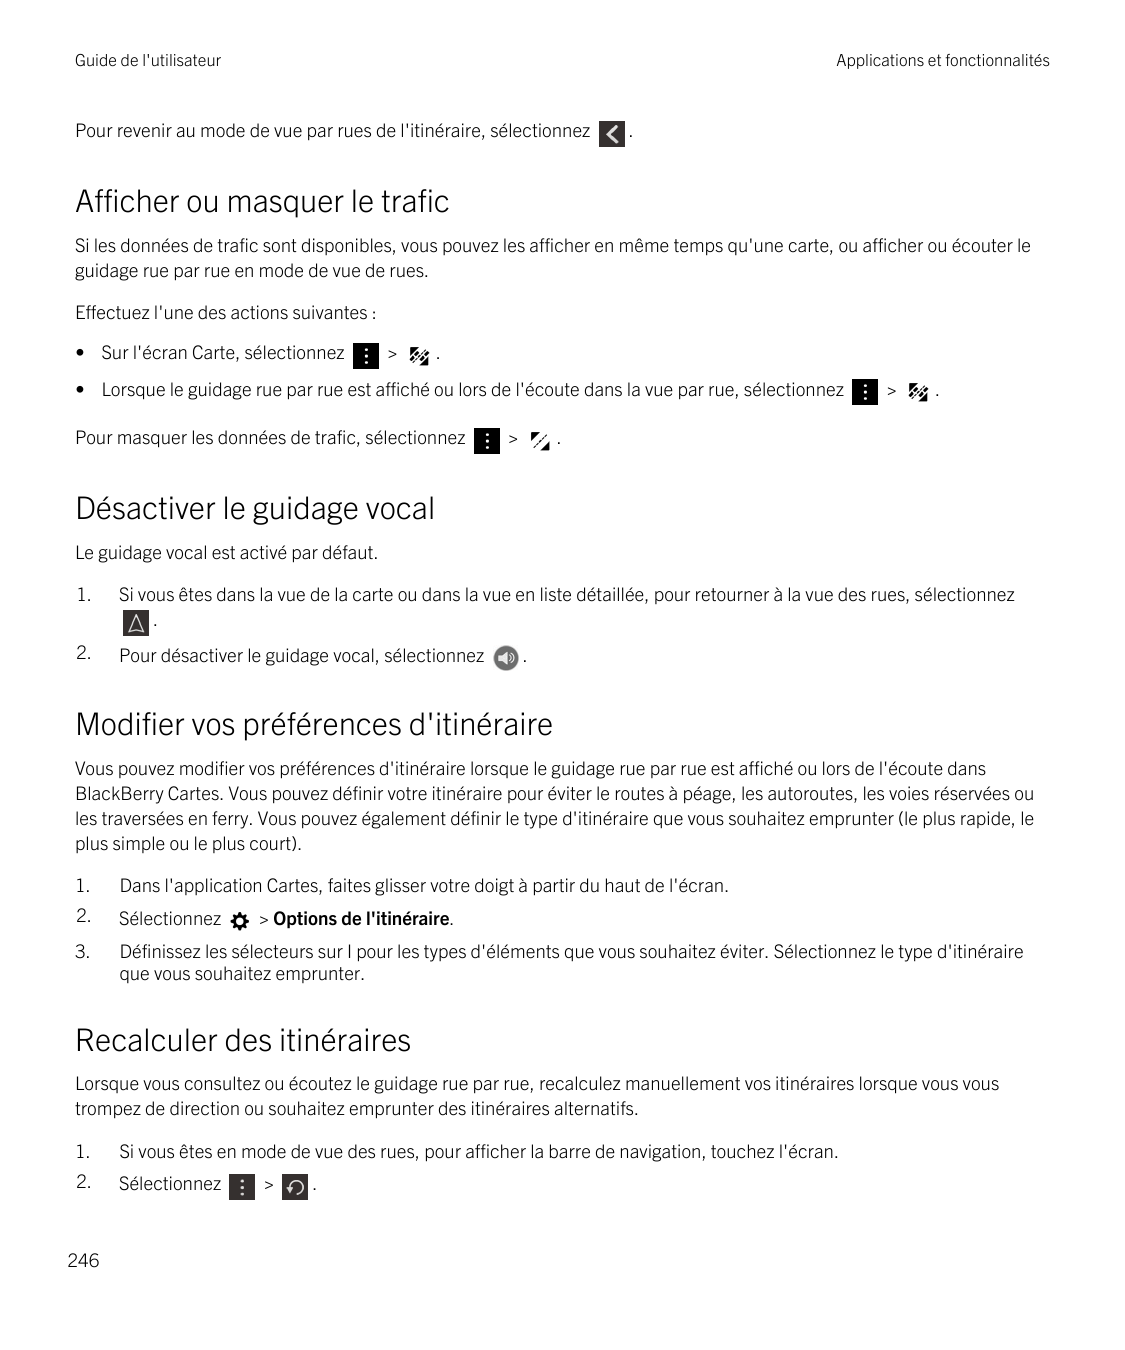 Guide de l'utilisateurApplications et fonctionnalitésPour revenir au mode de vue par rues de l'itinéraire, sélectionnez.Afficher